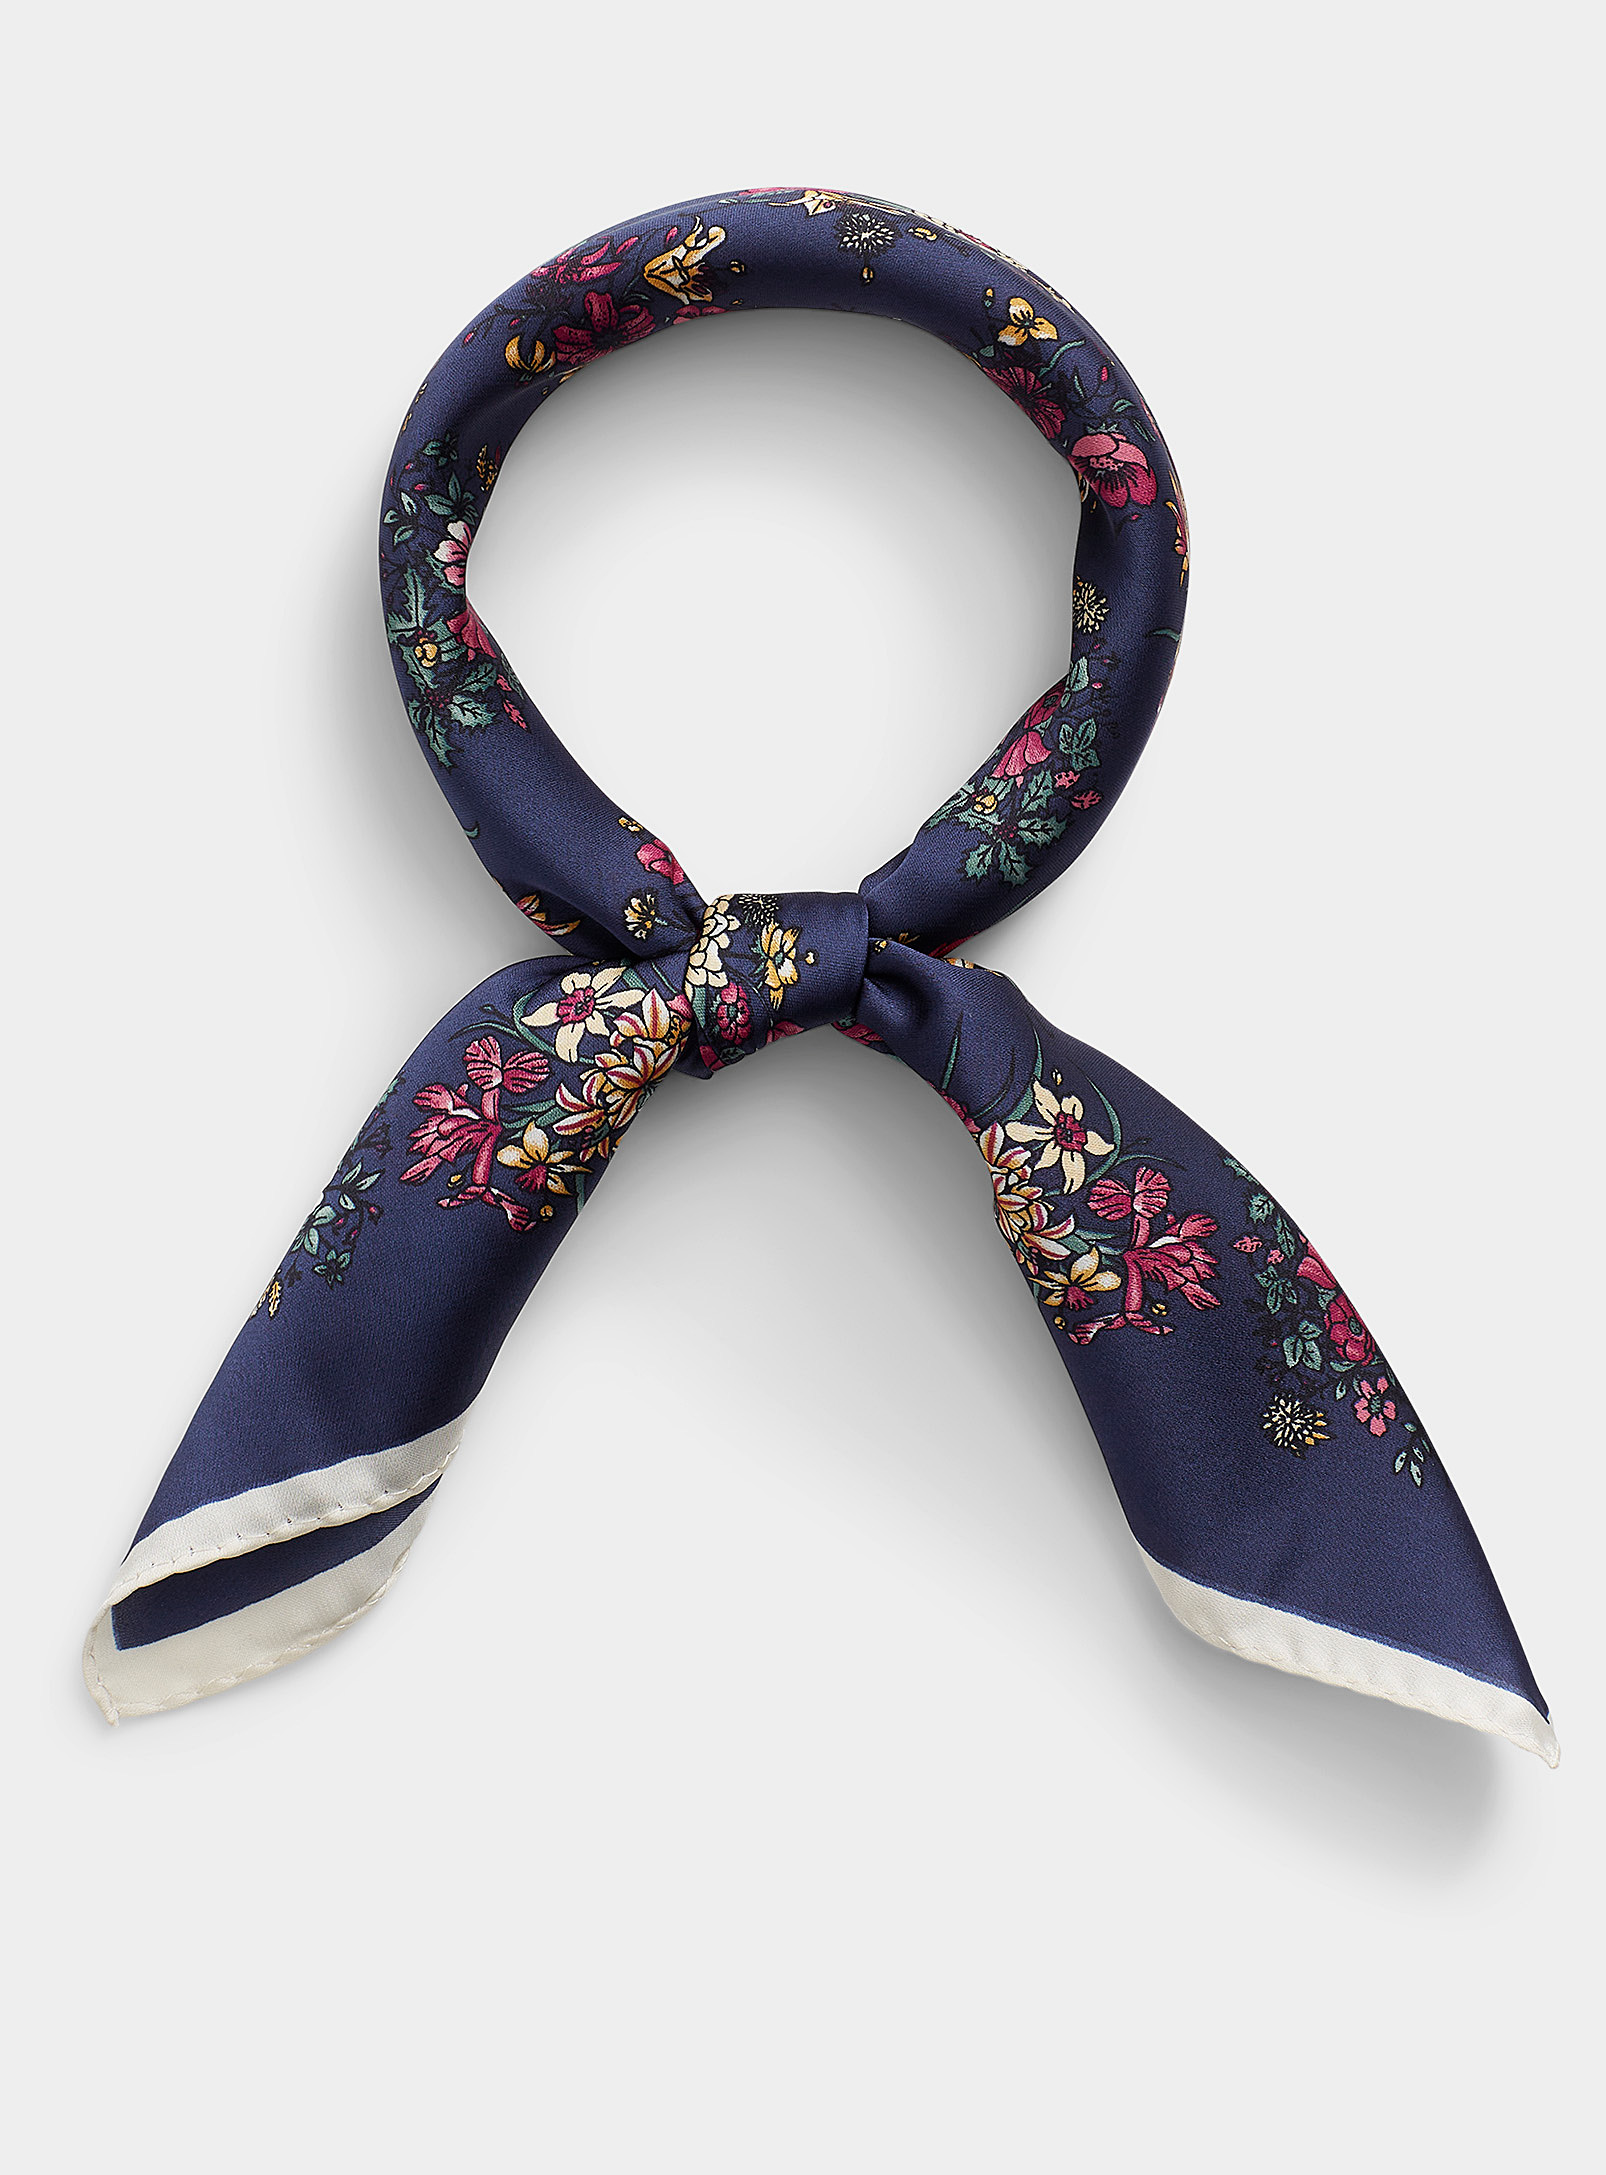 Simons - Le foulard bouquets romantiques